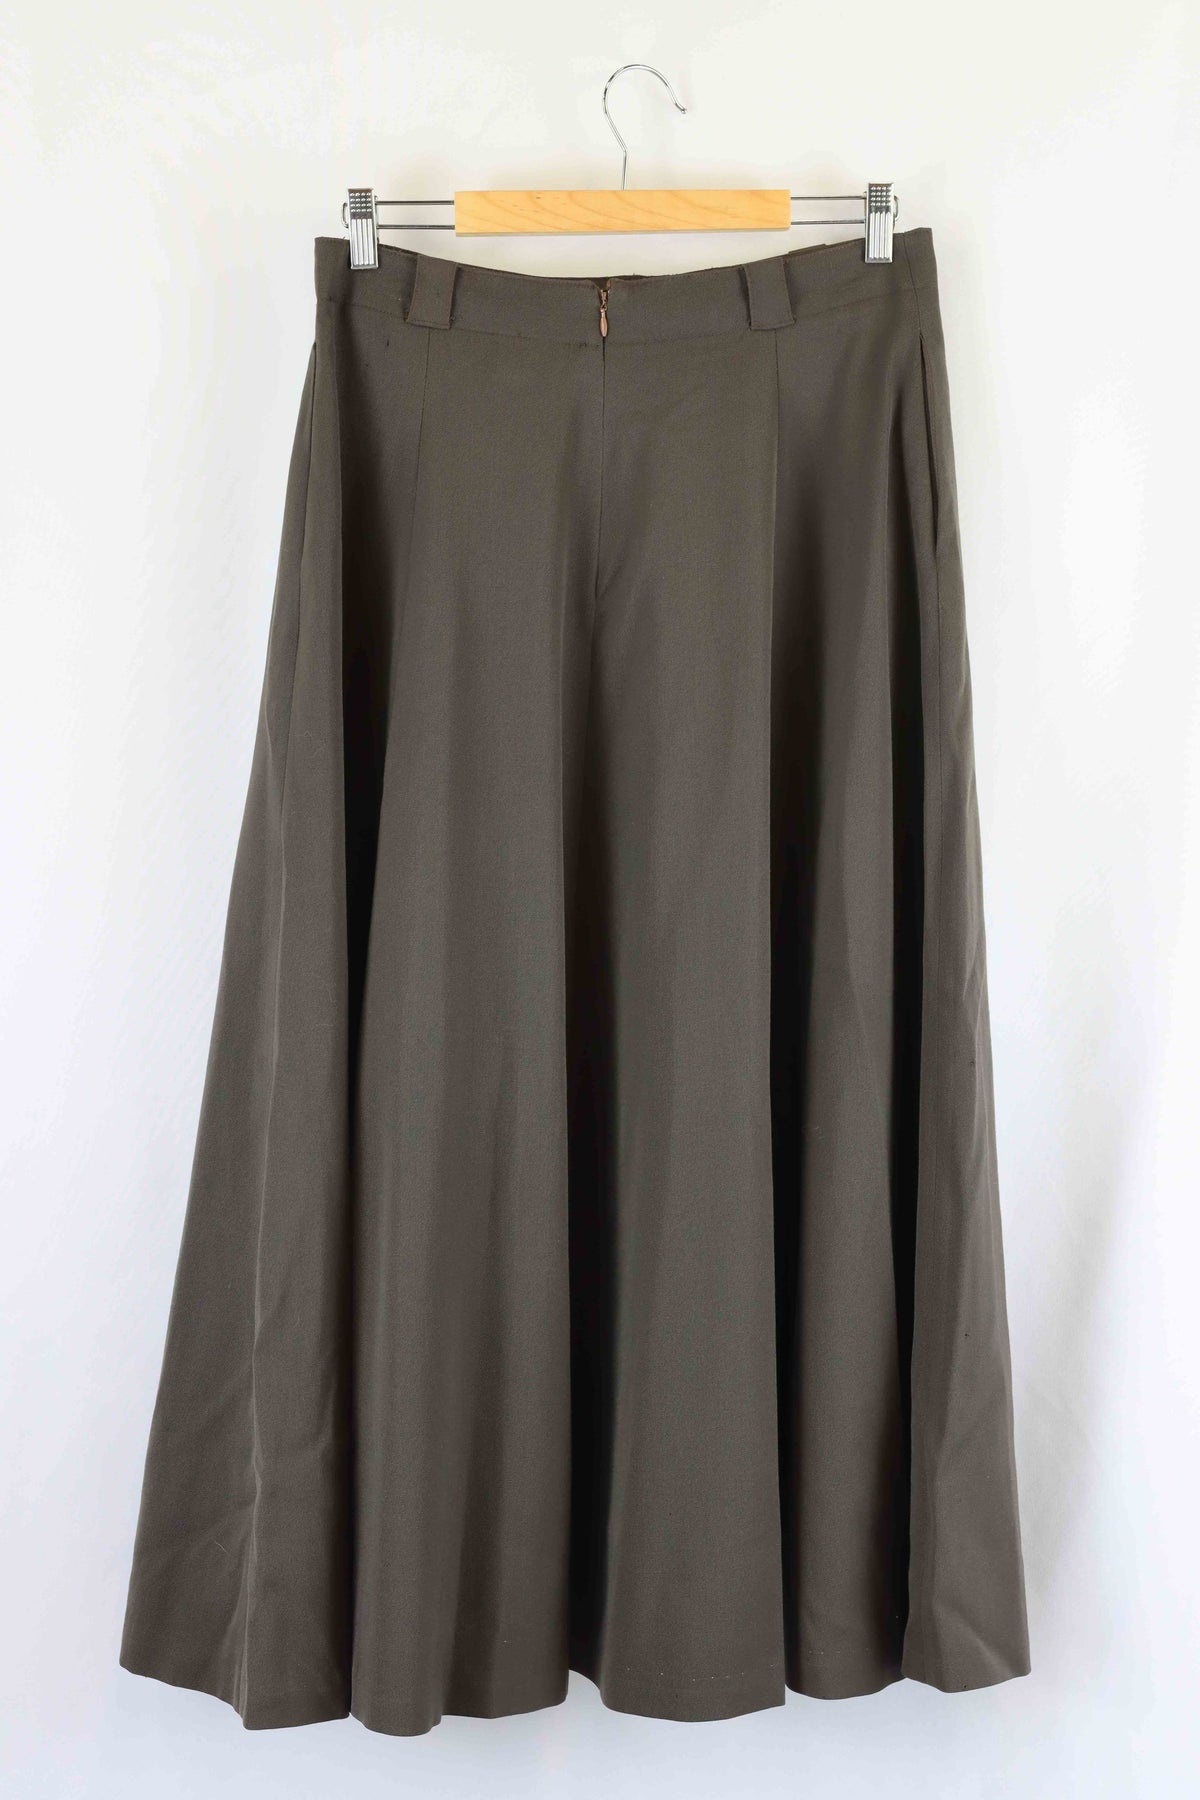 Prophecy Vintage Brown Wool Skirt 16